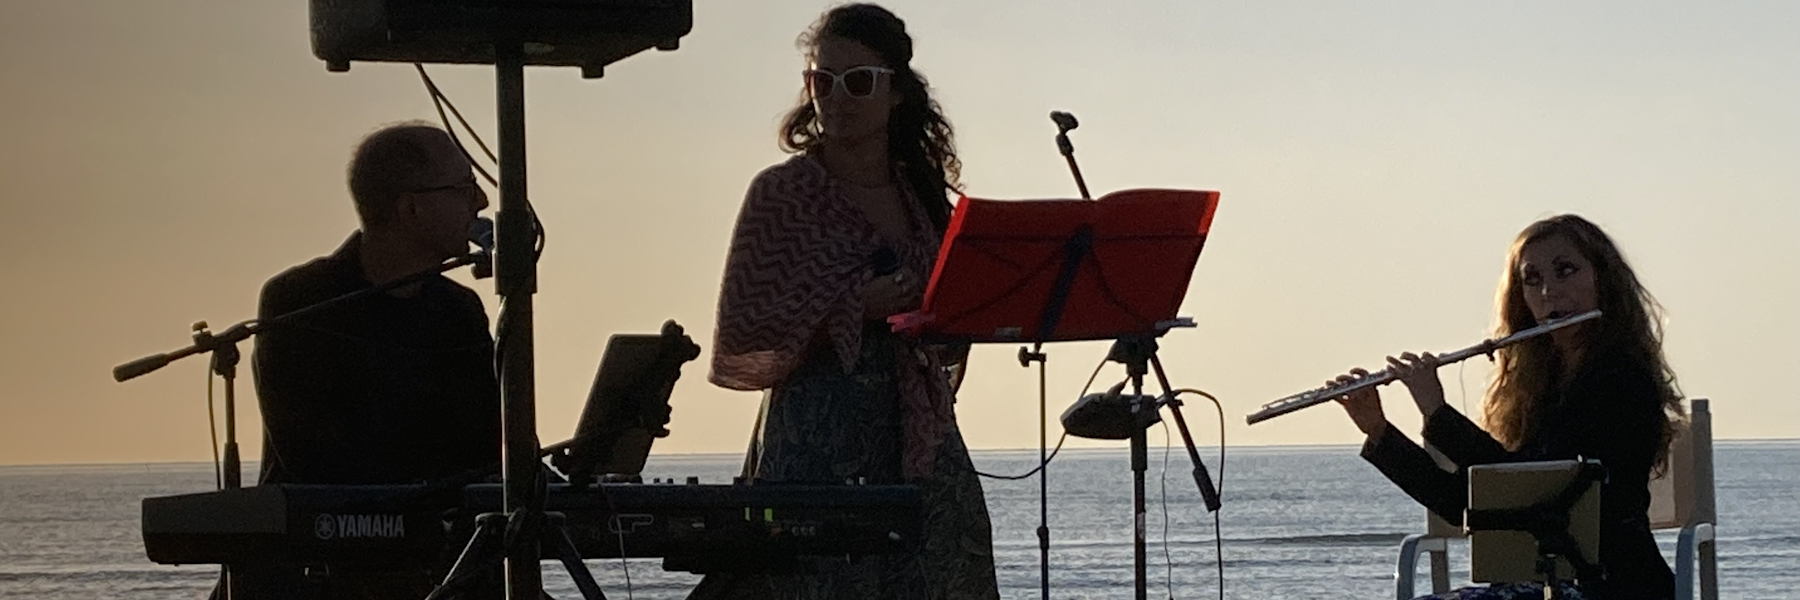 Sunrise concerts on the beach of Tagliata